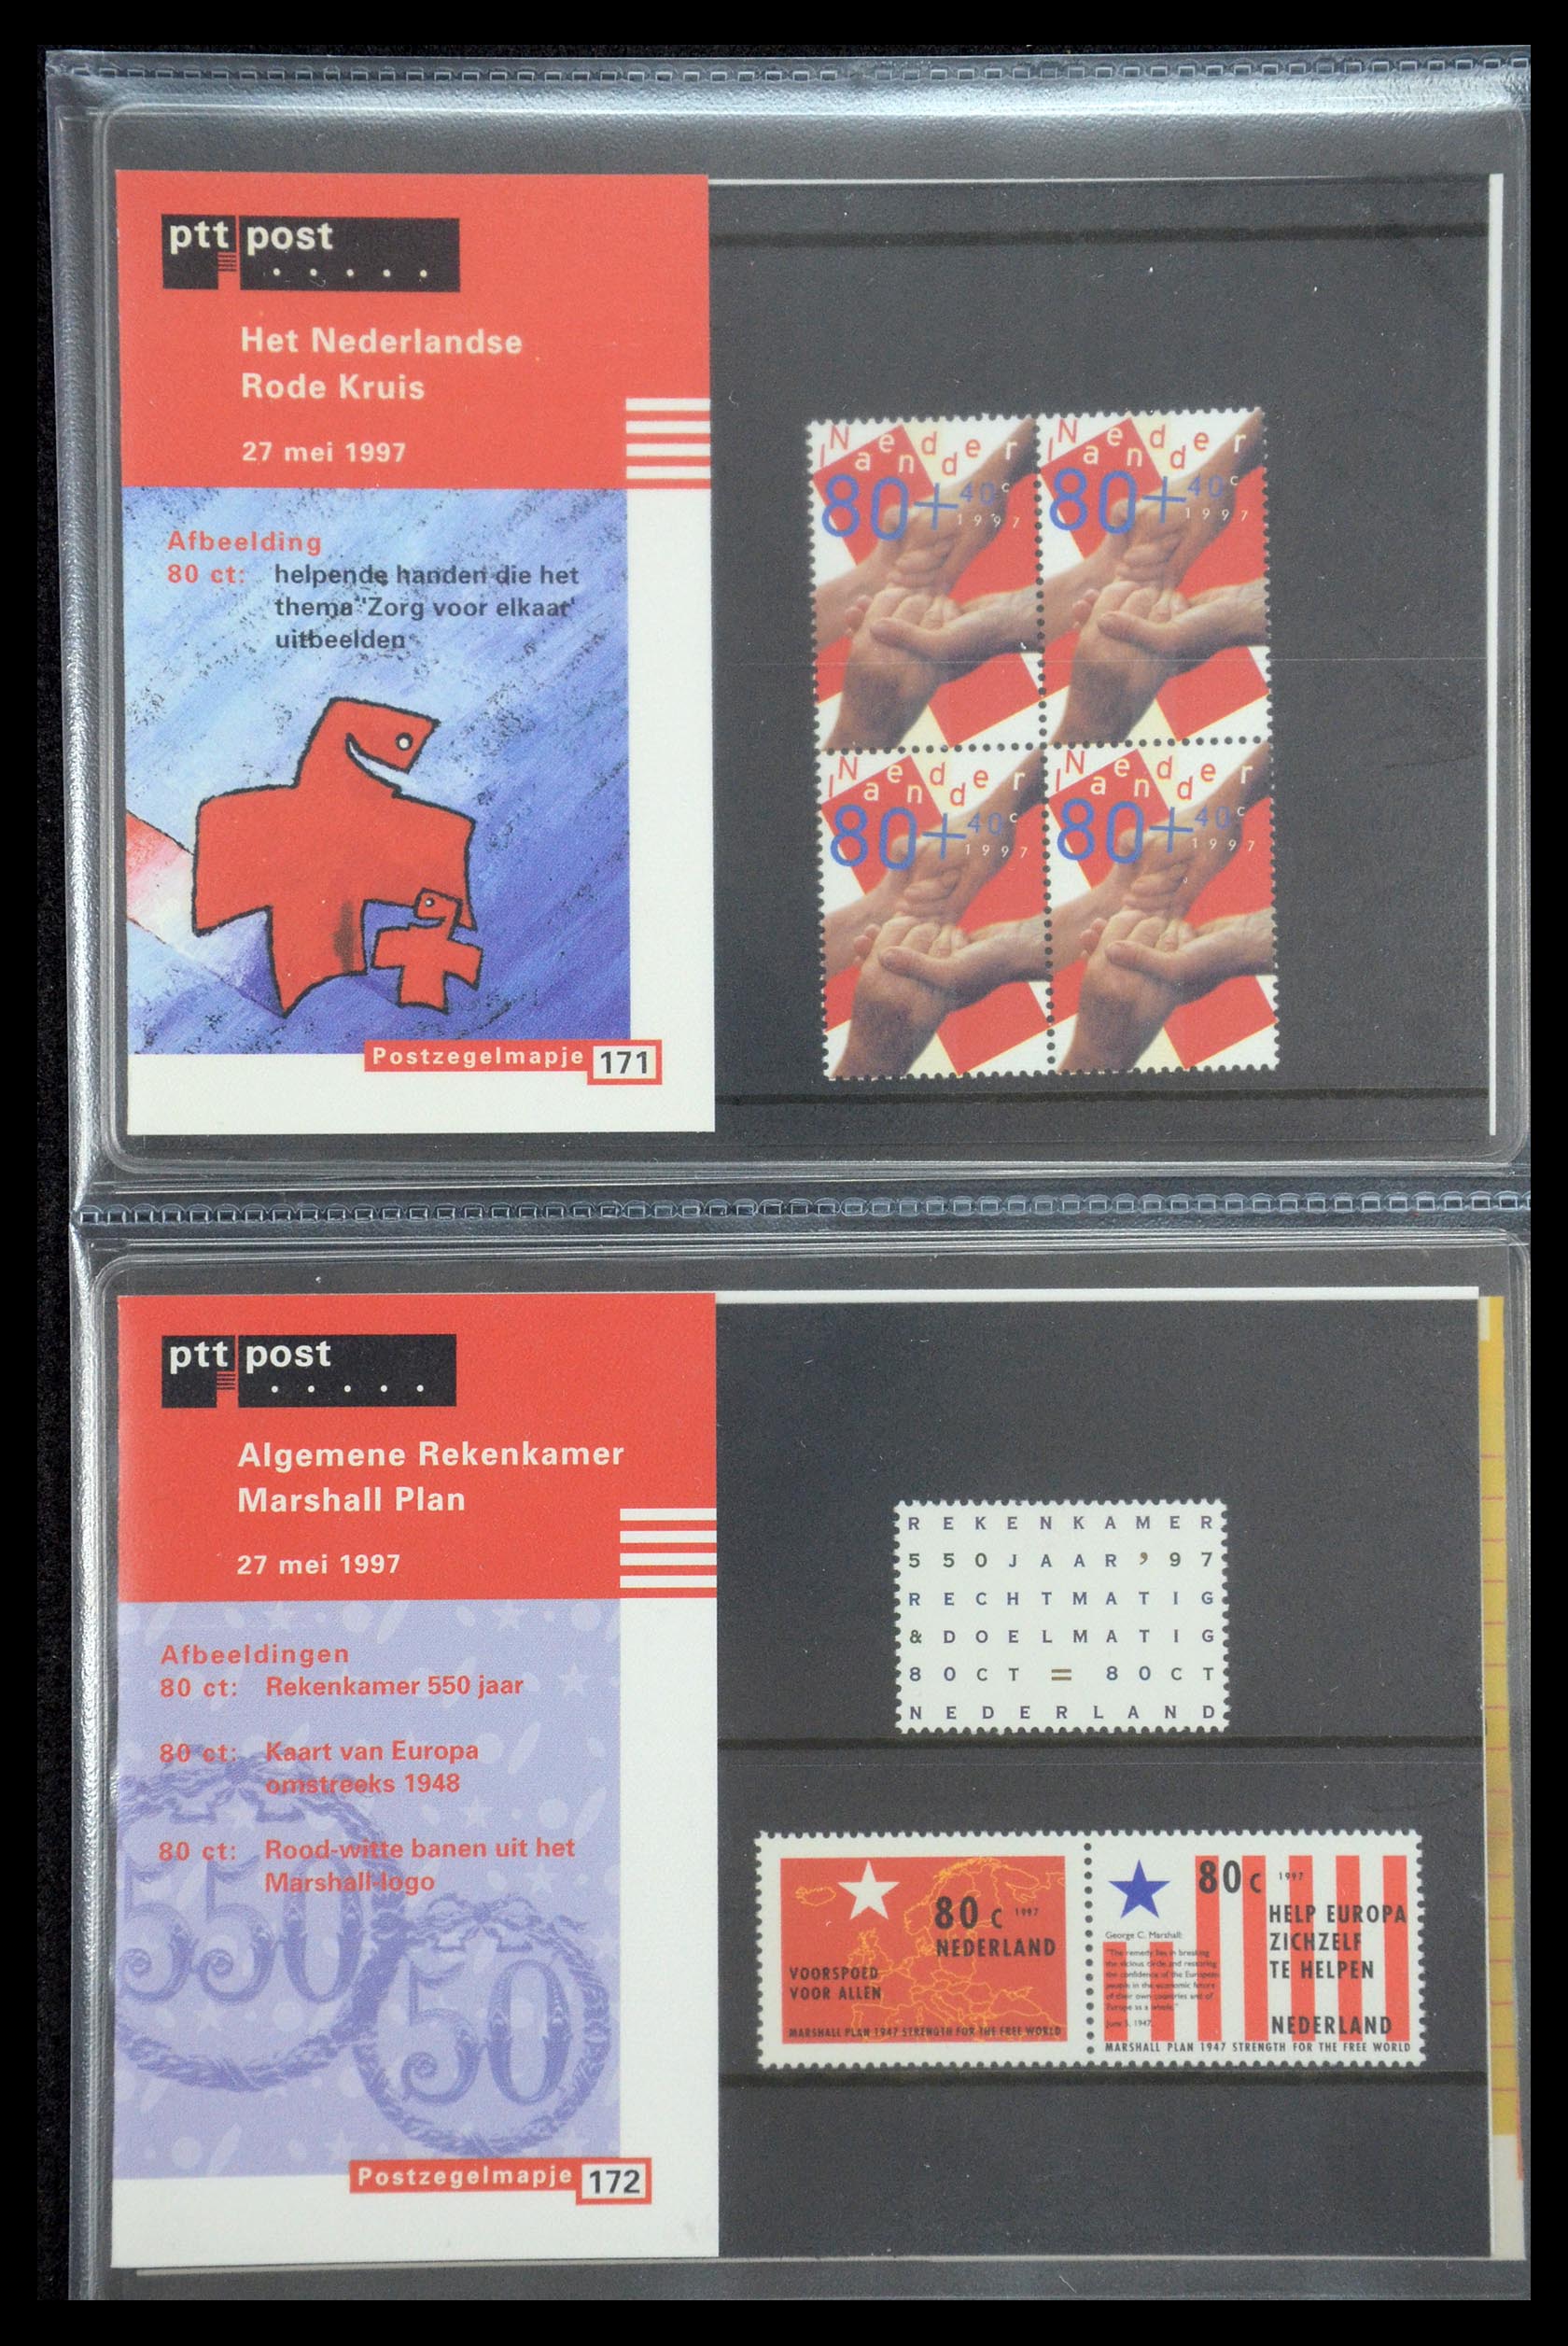 35187 088 - Stamp Collection 35187 Netherlands PTT presentation packs 1982-2019!